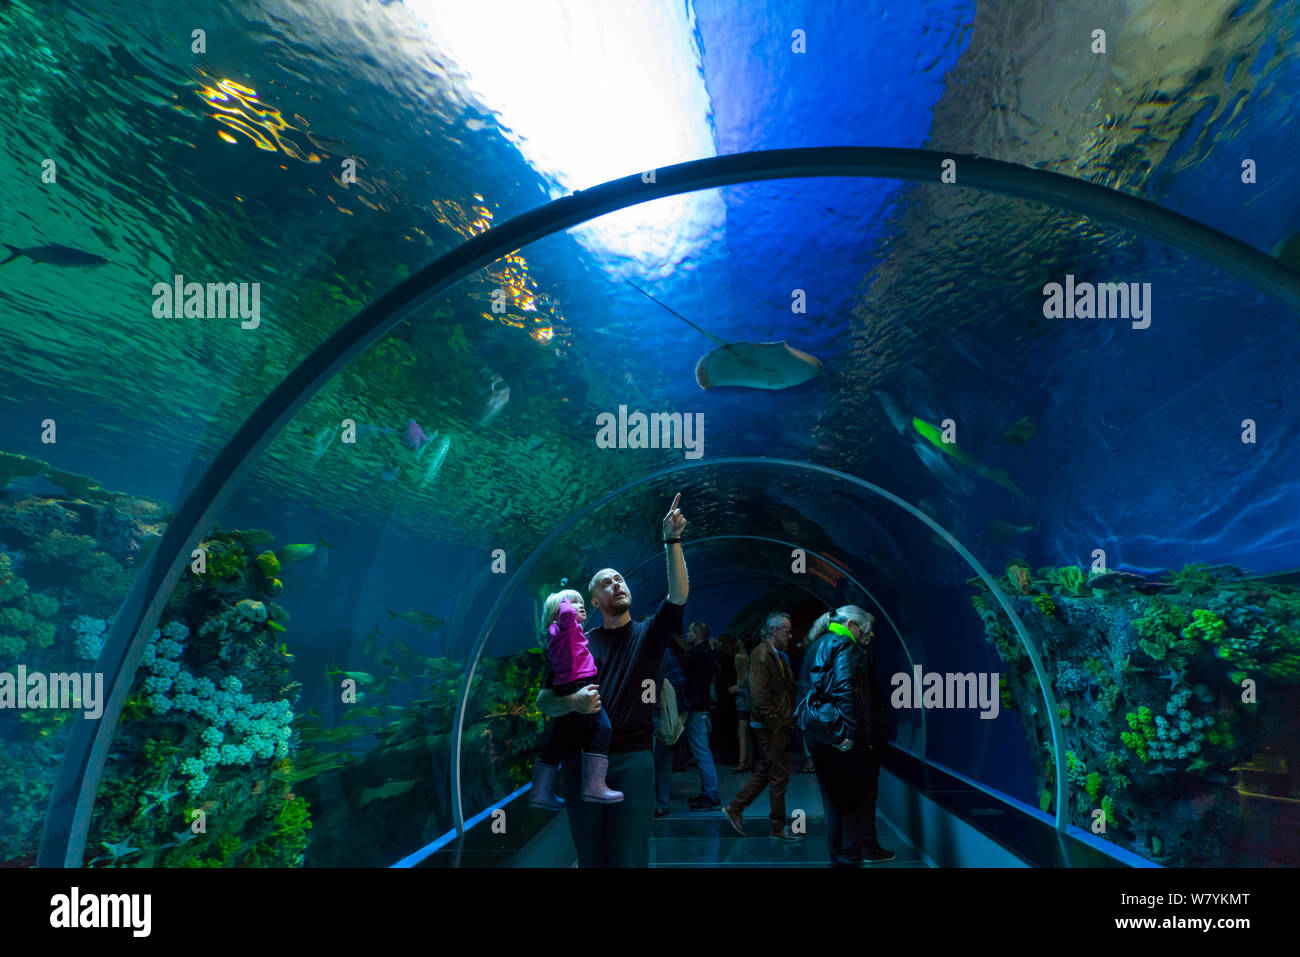 Viendo a la gente pasar peces de túnel subacuático, Den Bla Planet Aquarium, Copenhague, Dinamarca, en Europa, en septiembre de 2014. Foto de stock